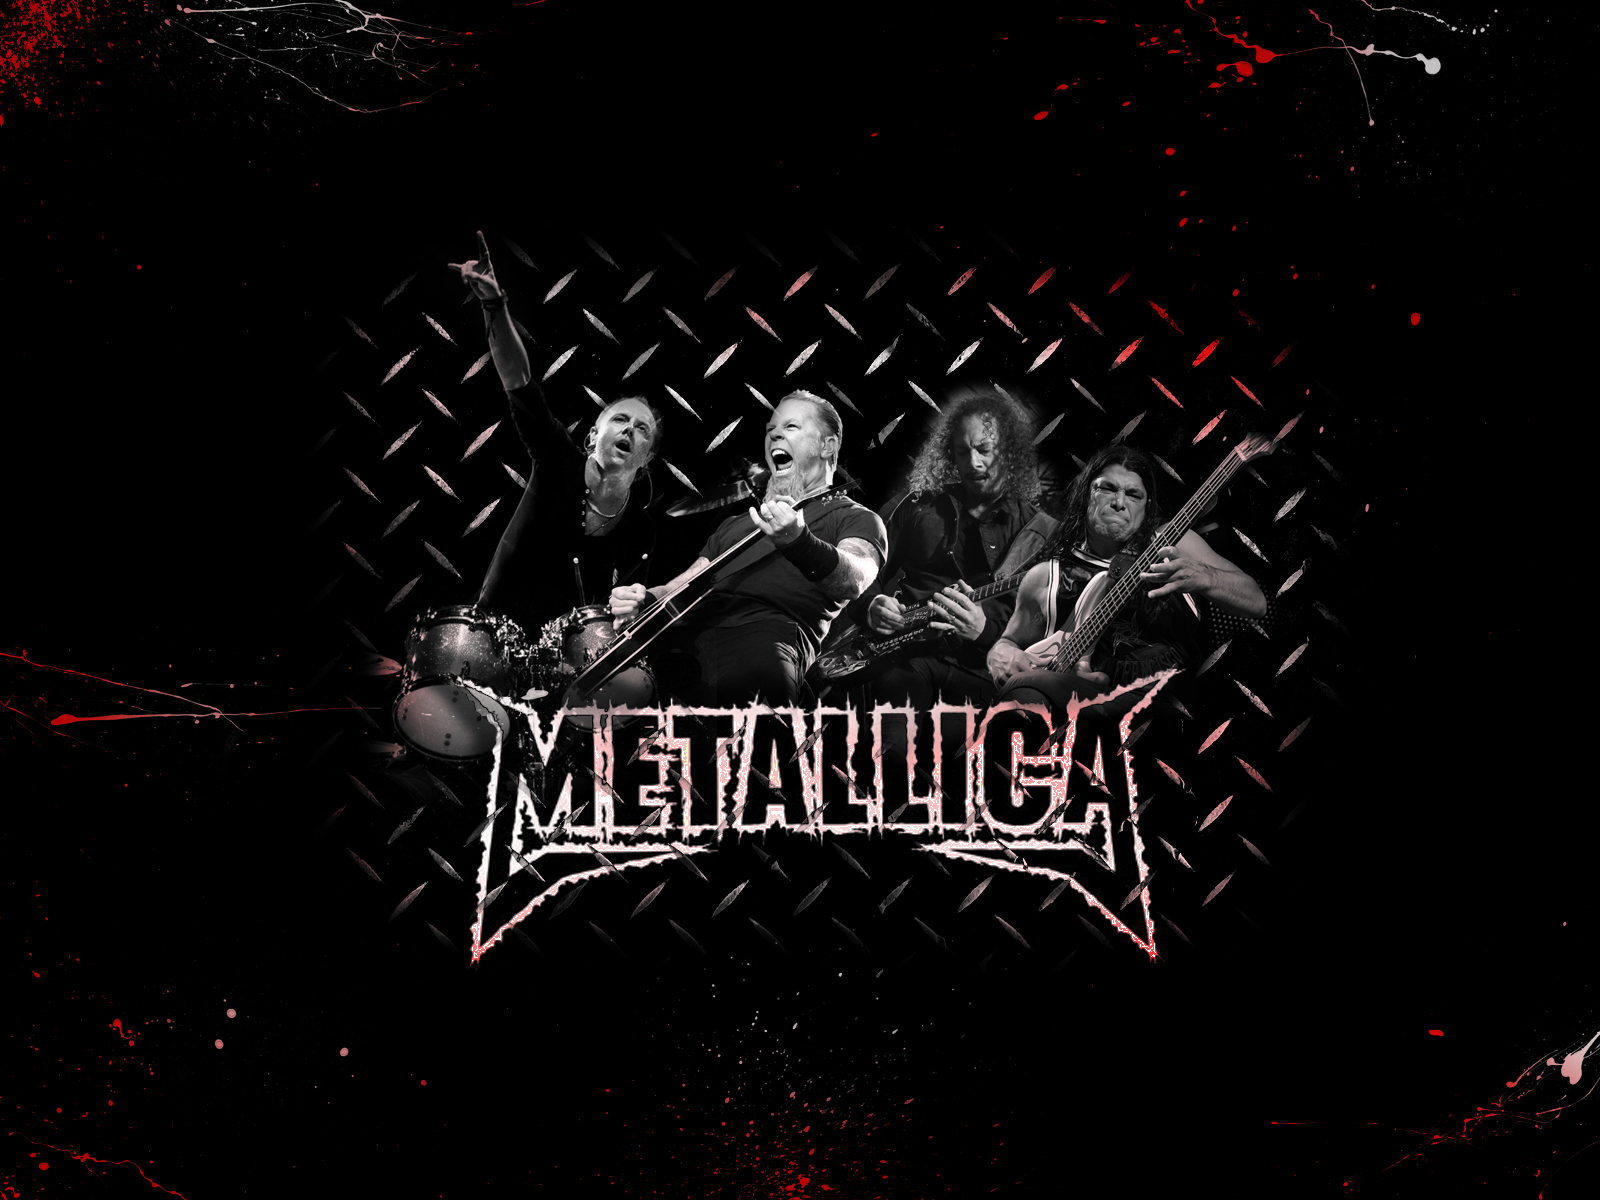 Papel De Parede Metallica Banda De Rock Wallpaper Para Download No